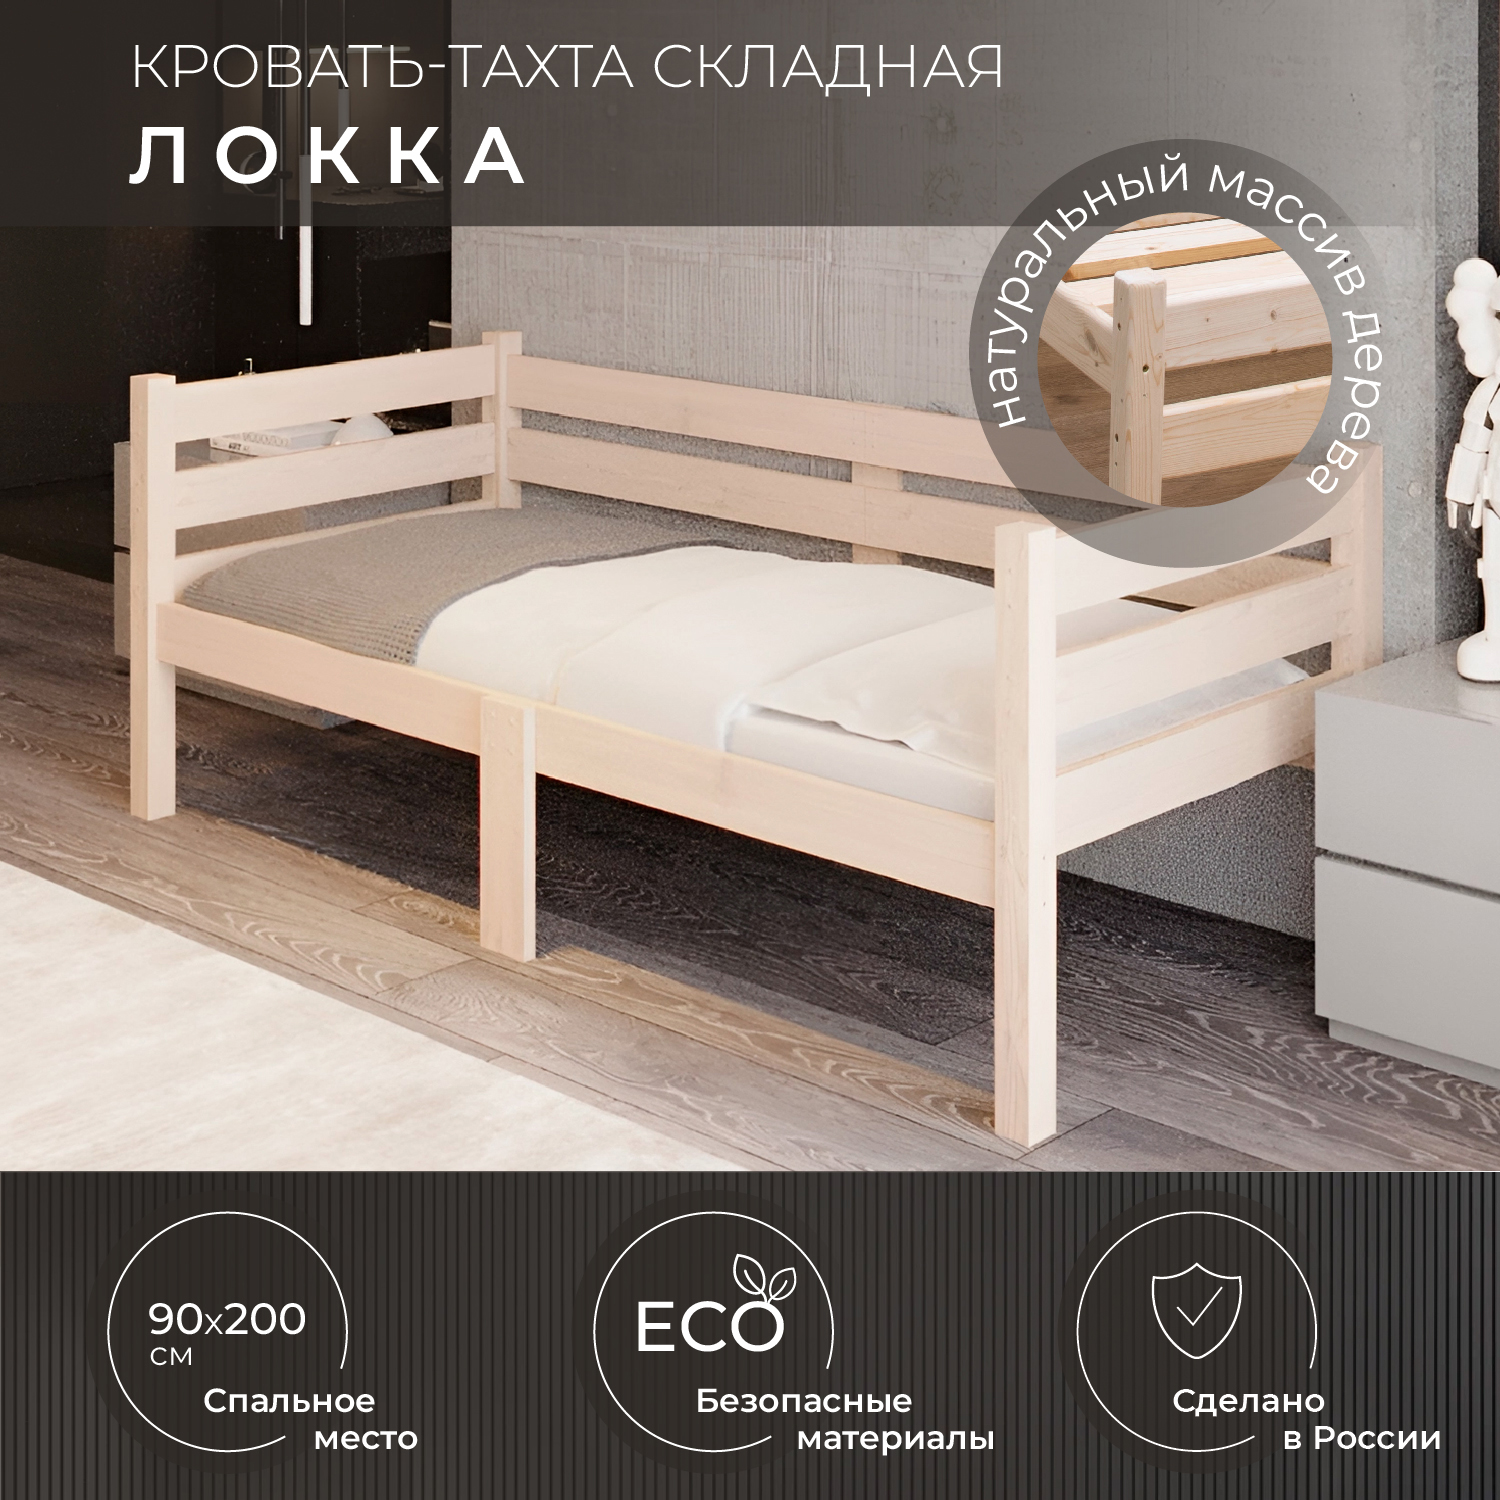 Кровать односпальная Новирон Локка 90х200 см складная бежевый